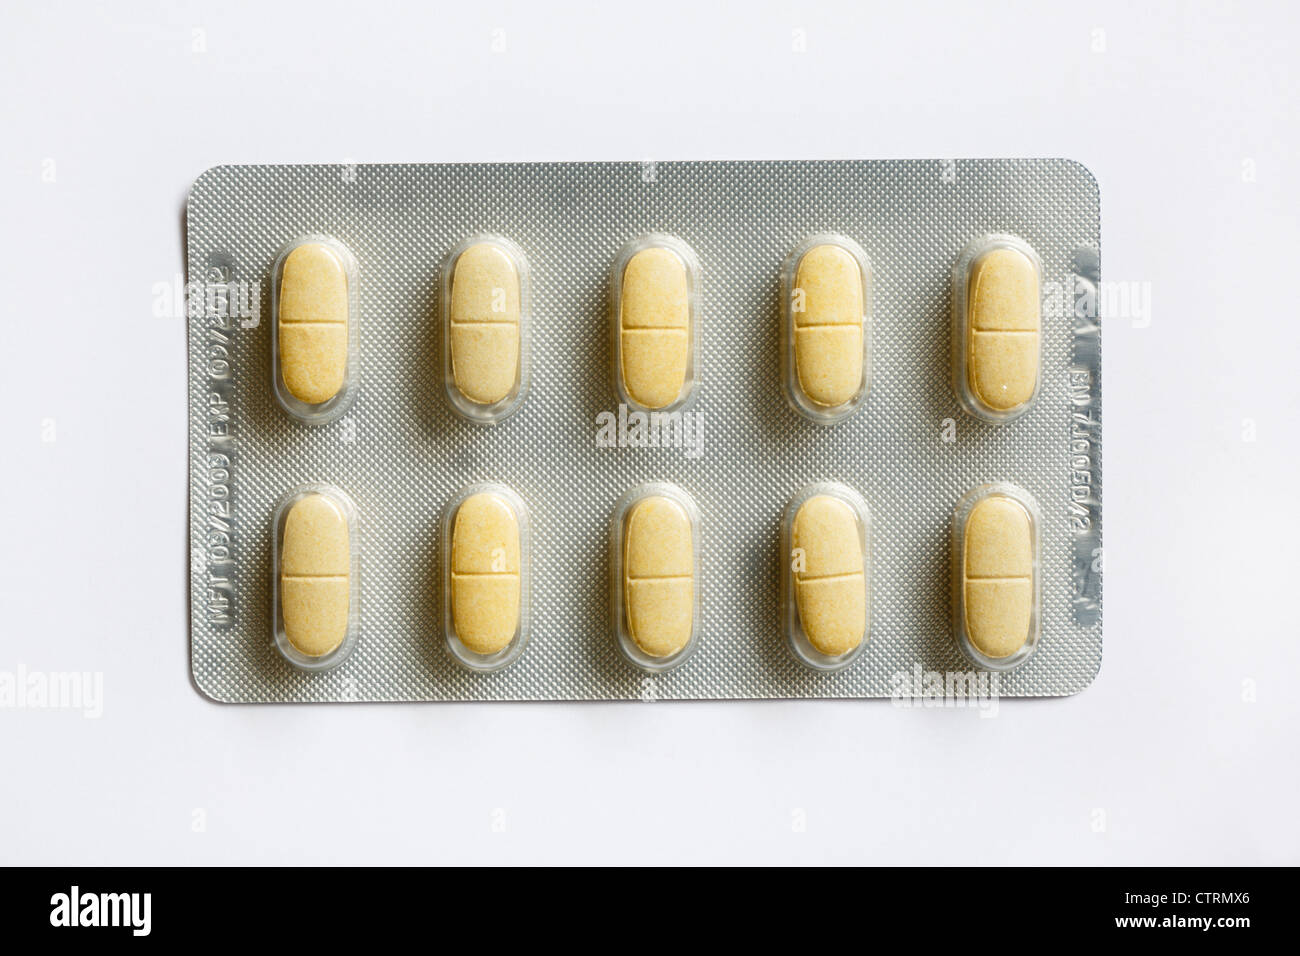 Folie Blister mit 10 Glucosamin und Chondroitin Verschreibungspflichtige Tabletten für die Gelenke auf einen einfachen Hintergrund isoliert Stockfoto